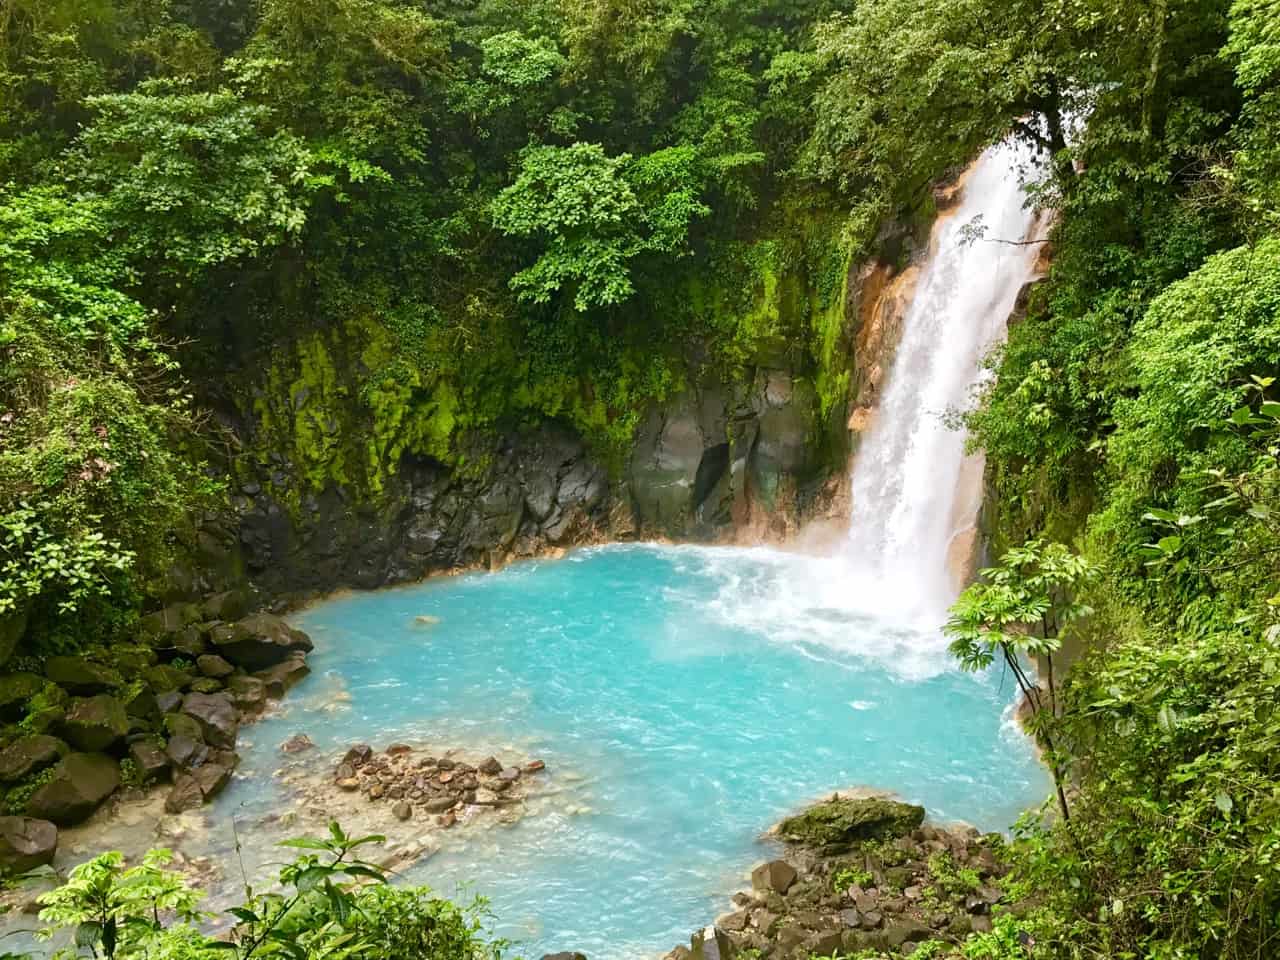  Cascada Rio Celeste se aruncă într-o piscină albastră-lăptoasă din Parcul Național Tenorio Volcano, unul dintre parcurile mai puțin vizitate din Costa Rica.